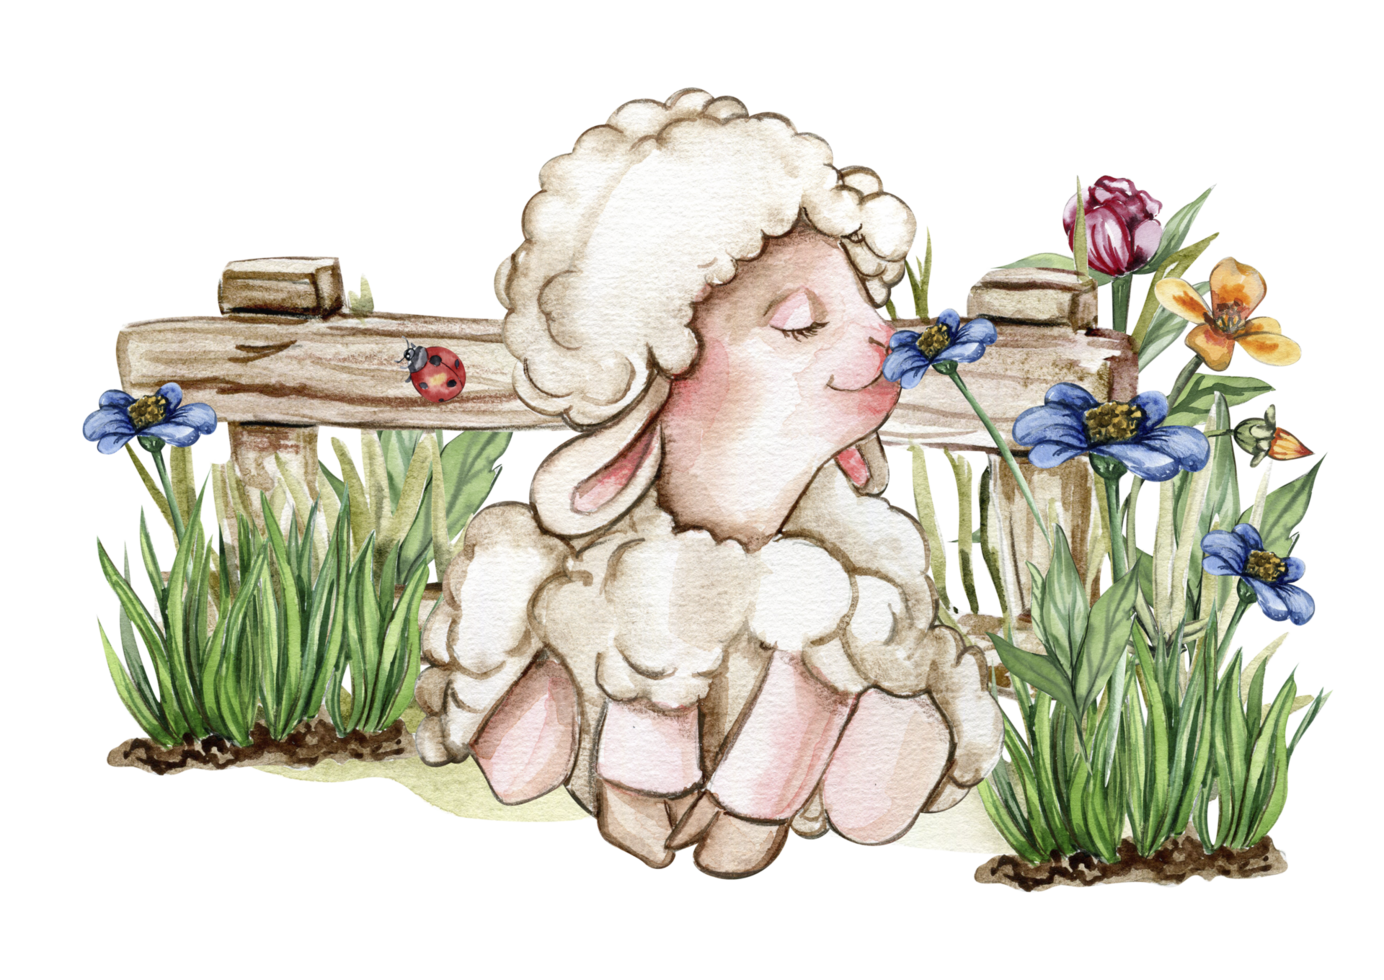 blanco mullido oveja sentado en el césped con flores y mariposas siguiente a de madera cerca. acuarela mano dibujado ilustración de granja bebé animal . Perfecto para saludos tarjeta, póster, tela modelo. png